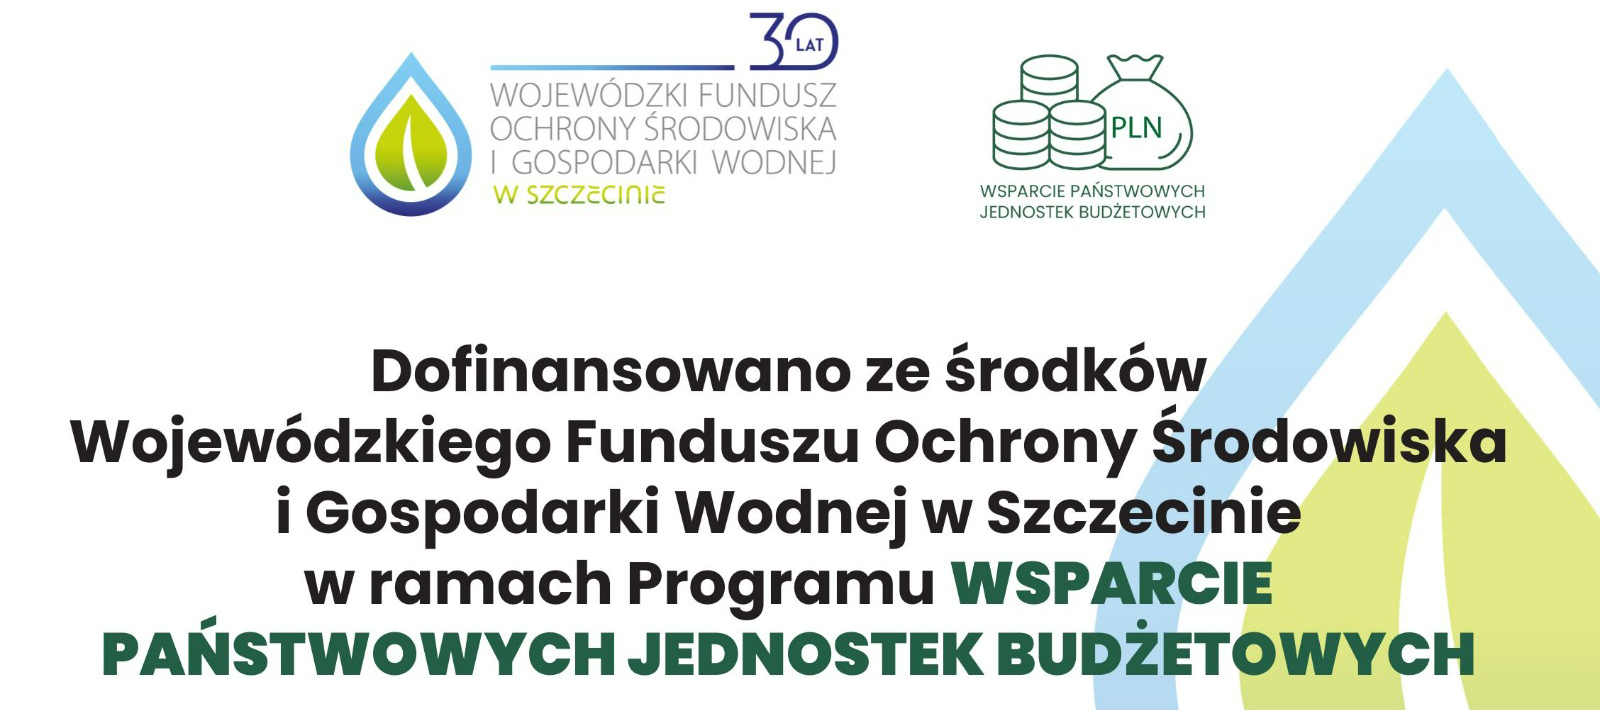 95 000 zł dofinansowania dla WIOŚ w Szczecinie na projekt edukacyjny